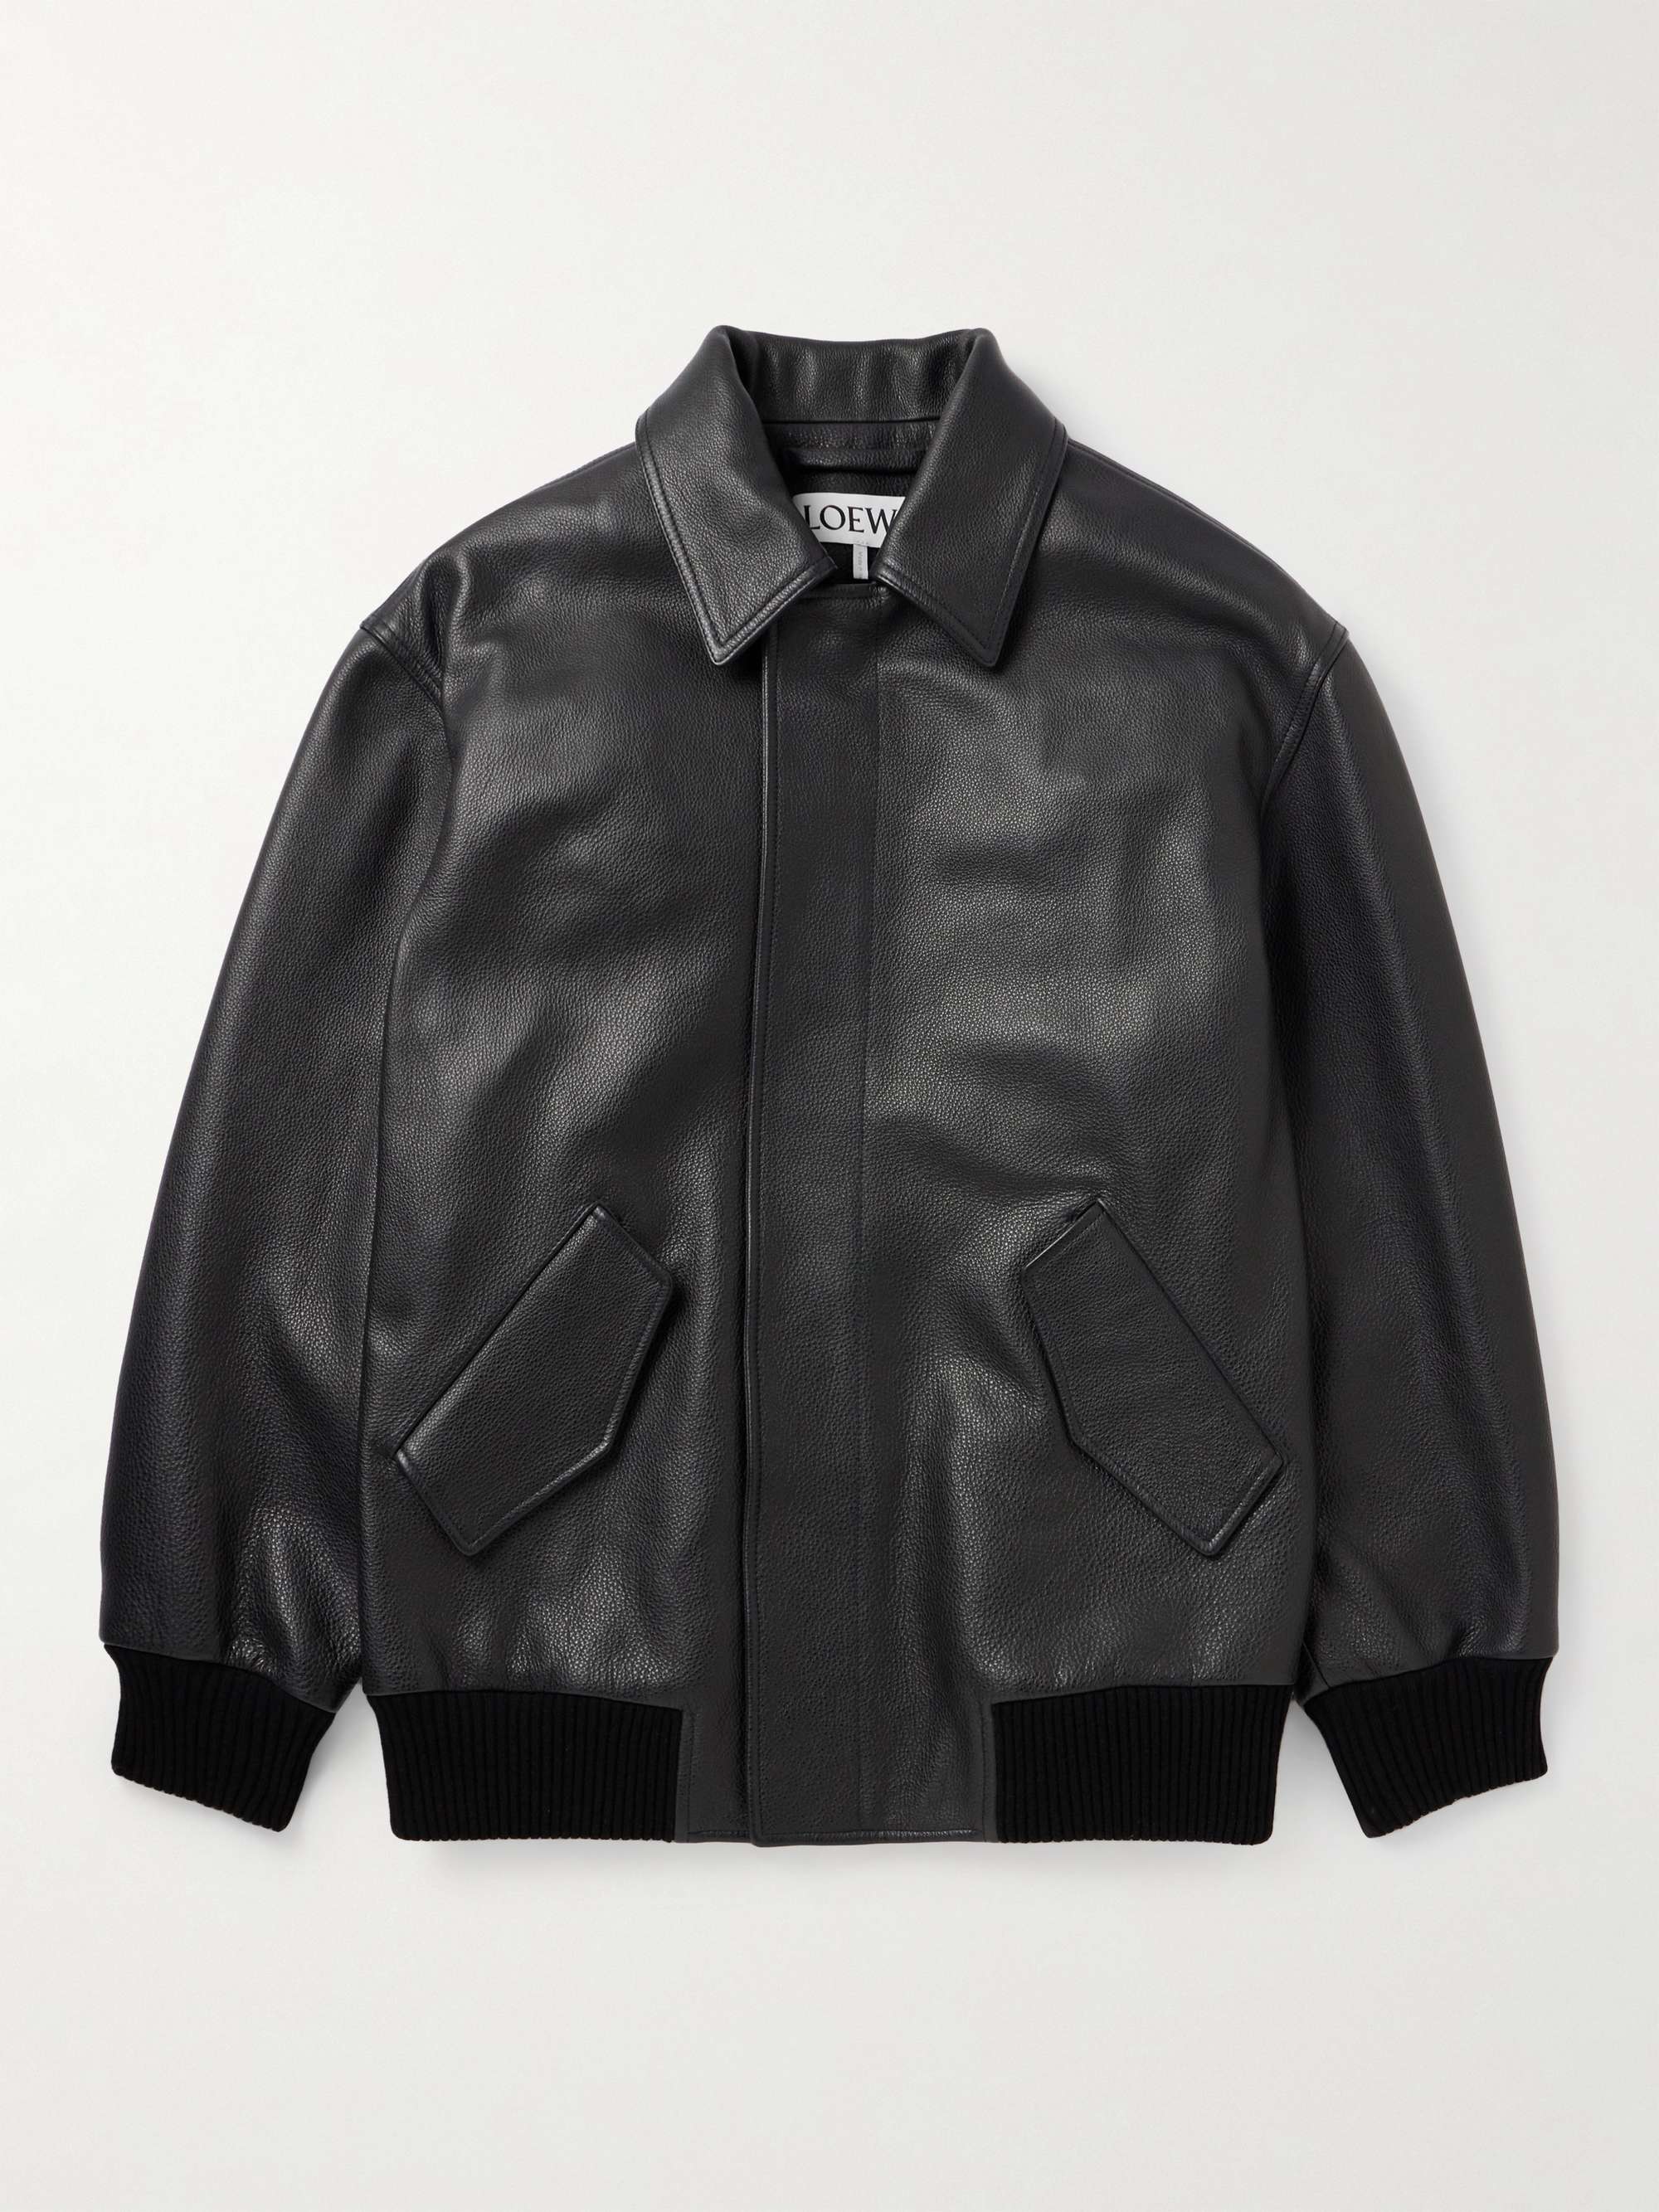 LOEWE Textured-Leather Bomber Jacket for Men | MR PORTER